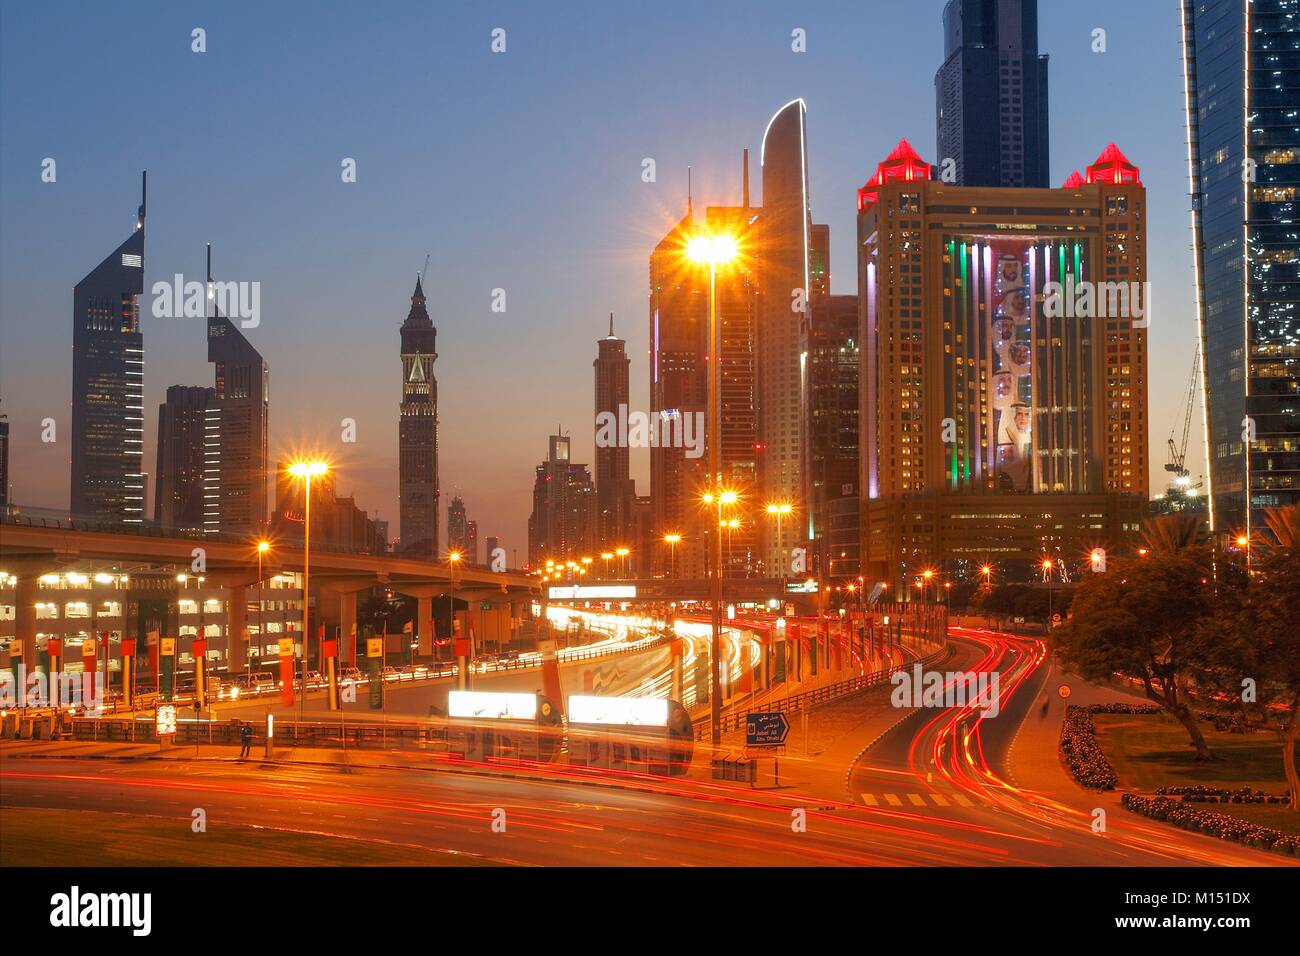 United Arab Emirates, Dubai, the towers of Sheikh Zayed Road Stock Photo